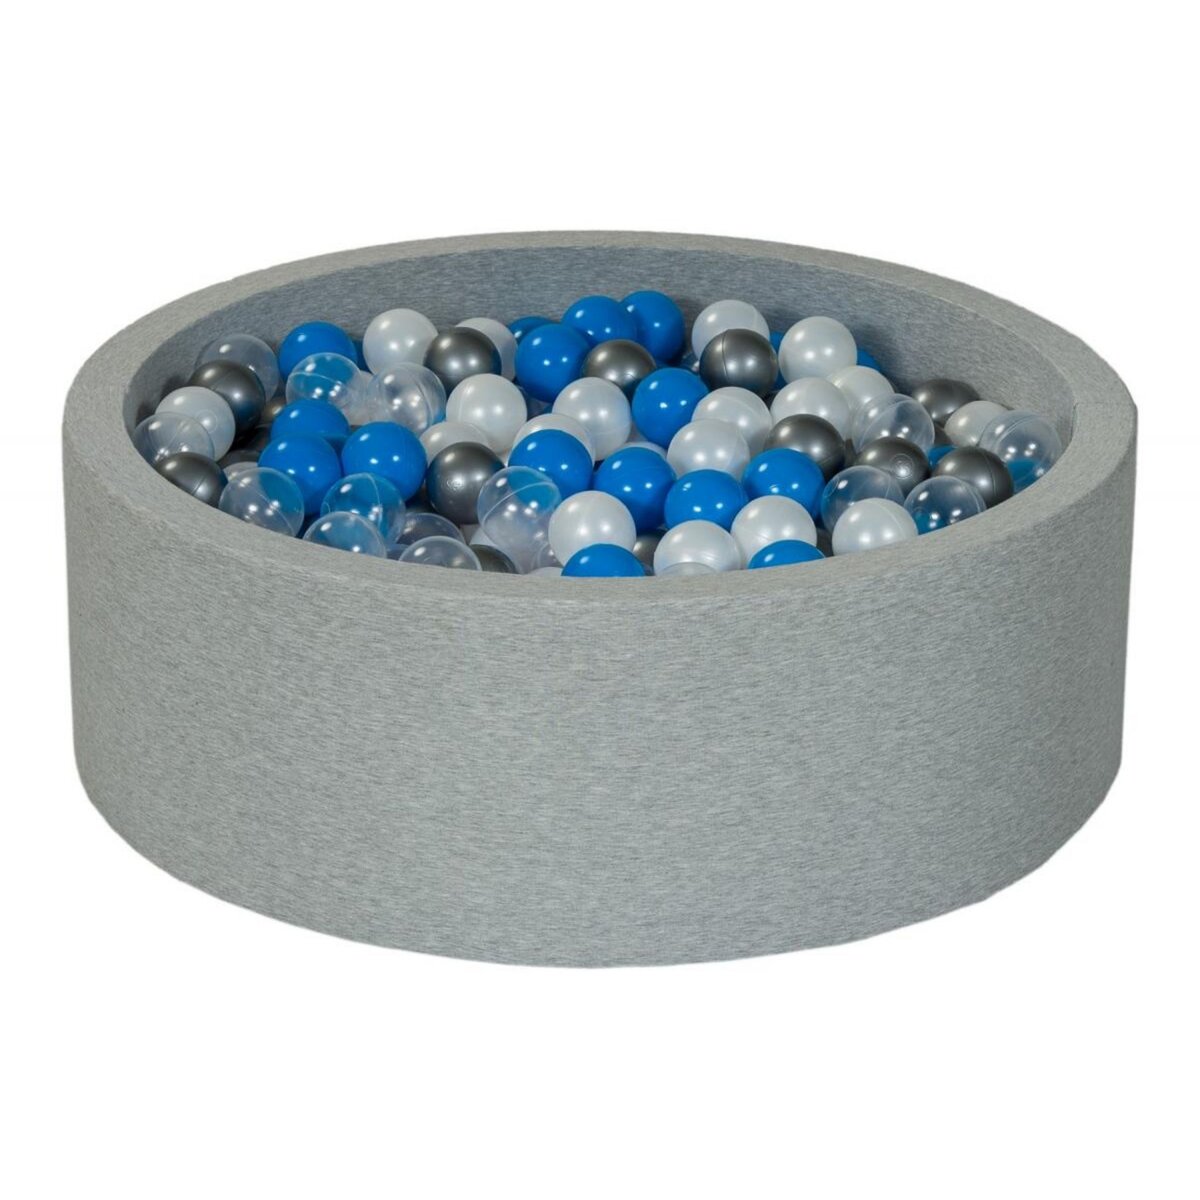  Piscine à balles perle, transparent, bleu, argent - 450 balles